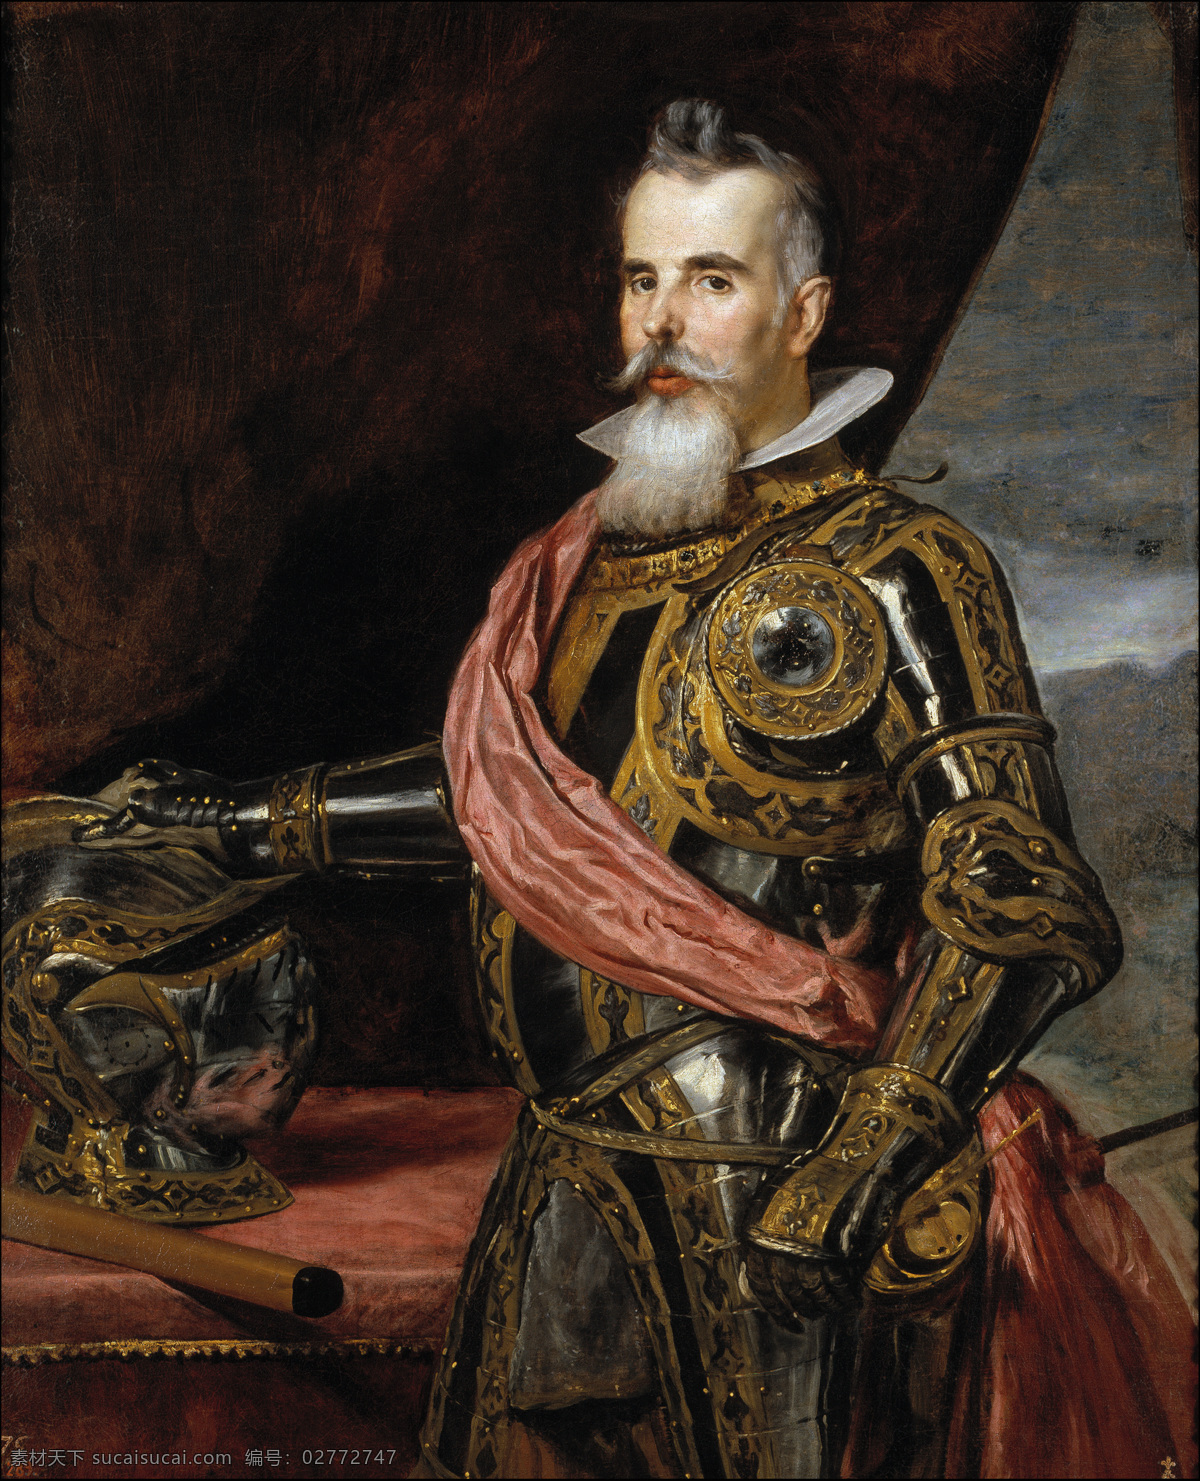 绘画书法 文化艺术 油画 西班牙公爵 巴洛克 时代 骑士装扮 迭戈 委 拉 斯凯 兹 作品 西班牙画家 菲利普 四世 统治 时期 装饰素材